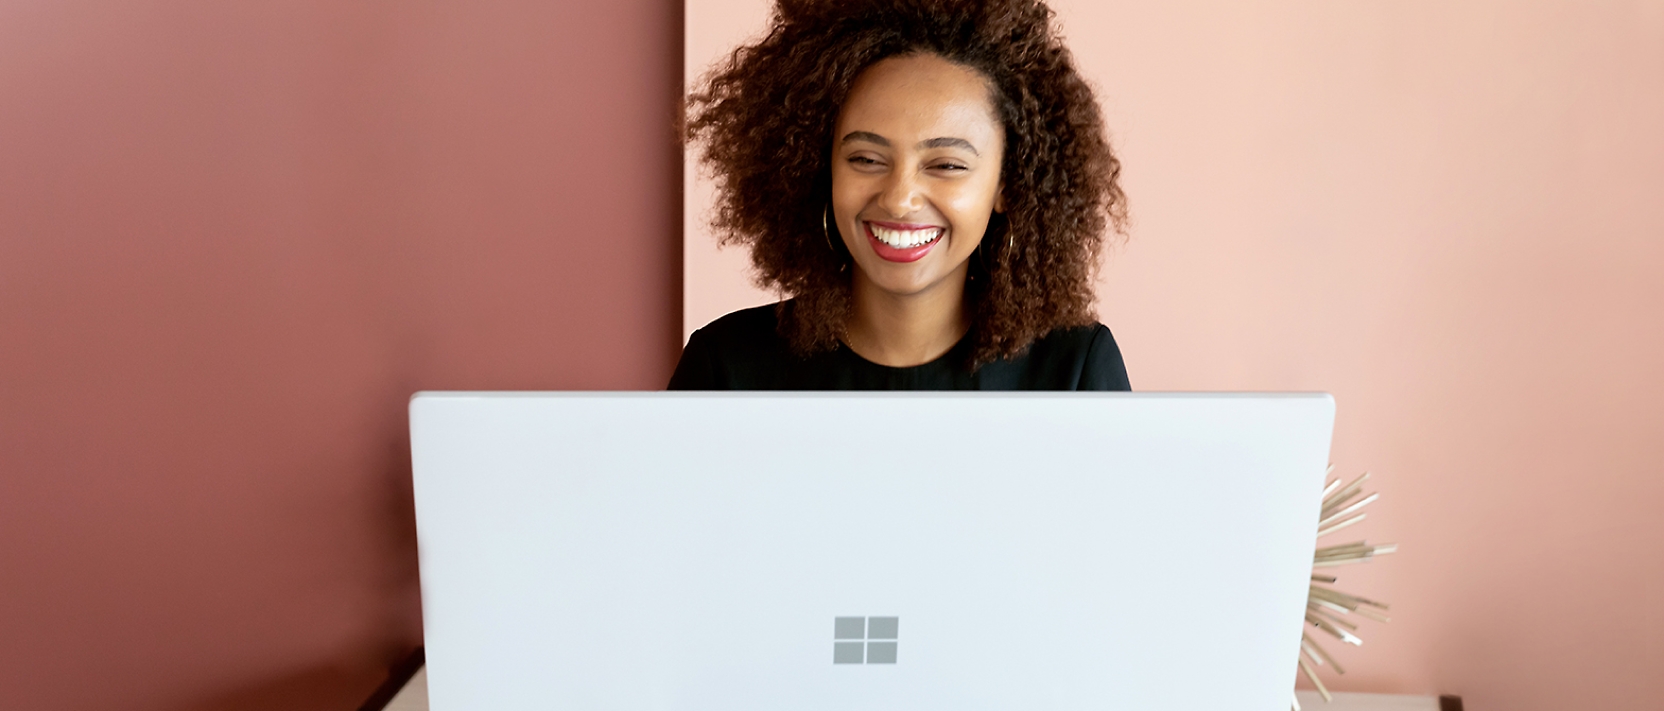 امرأة تبتسم أثناء العمل على كمبيوتر محمول.